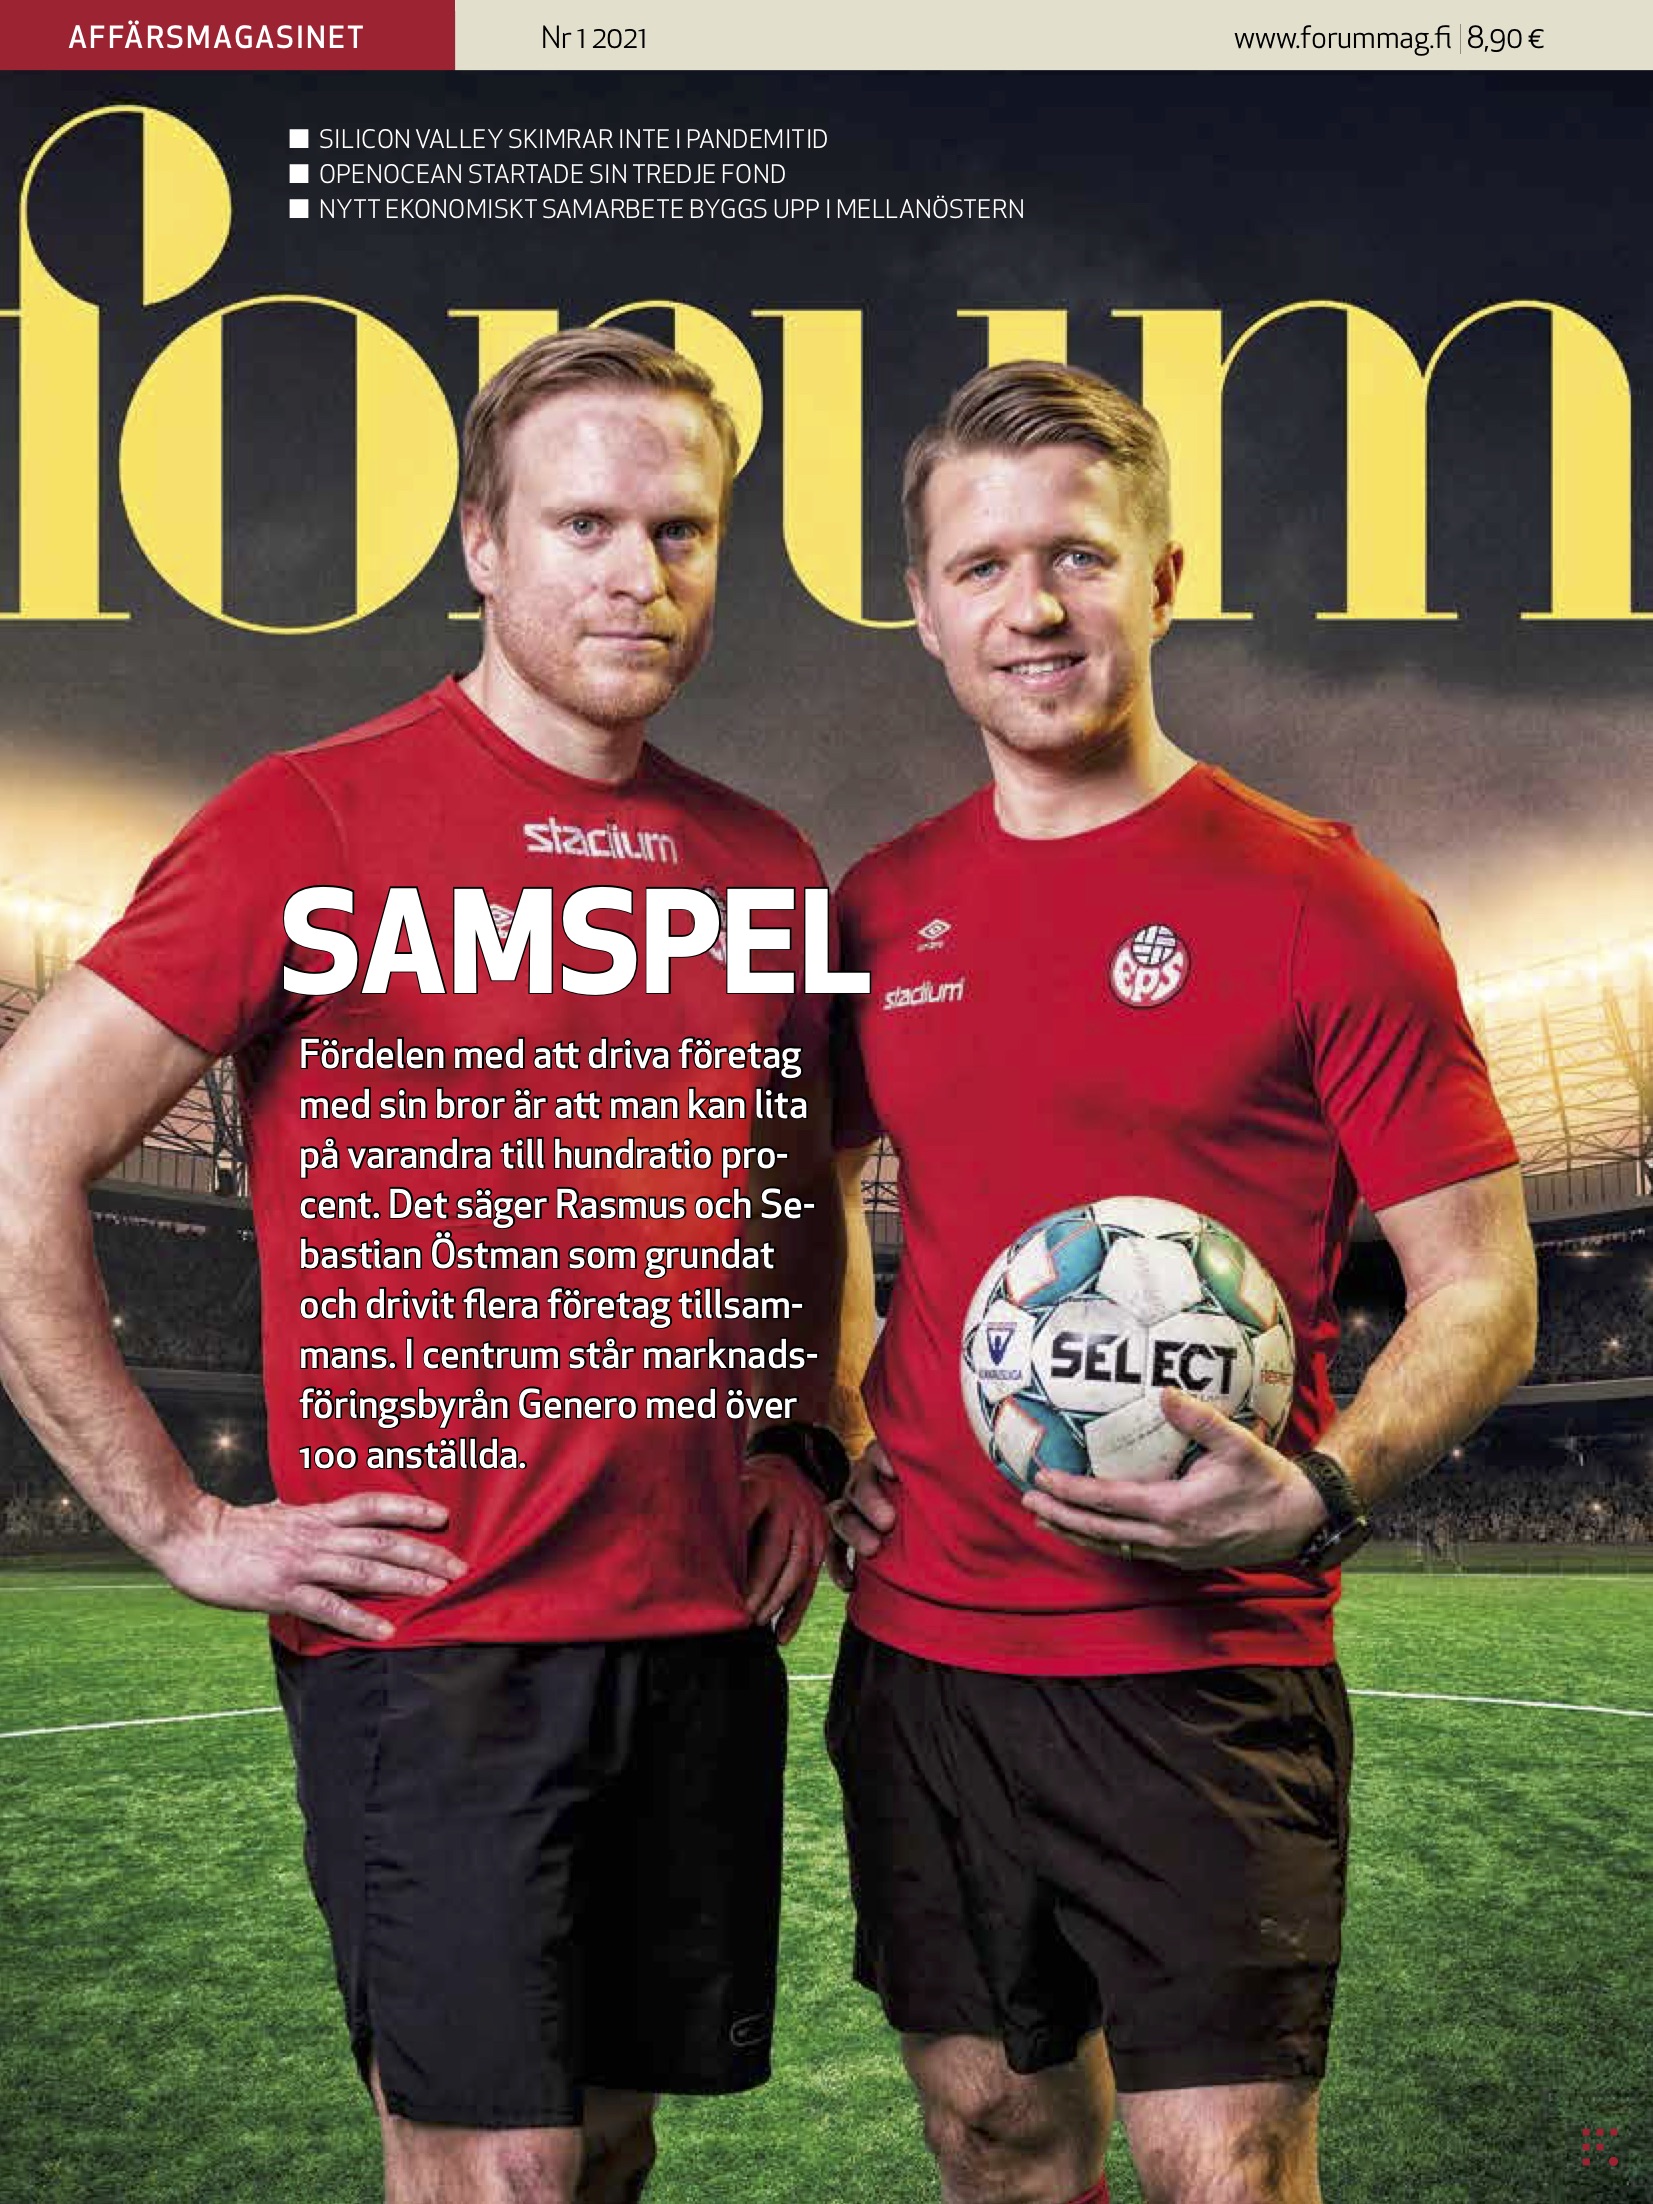 Bröderna Rasmus och Sebastian Östman diskuterar företag nästan hela tiden, men på fotbollsplanen är det paus. ”Där koncentrerar vi oss bara på bollen”, säger de.